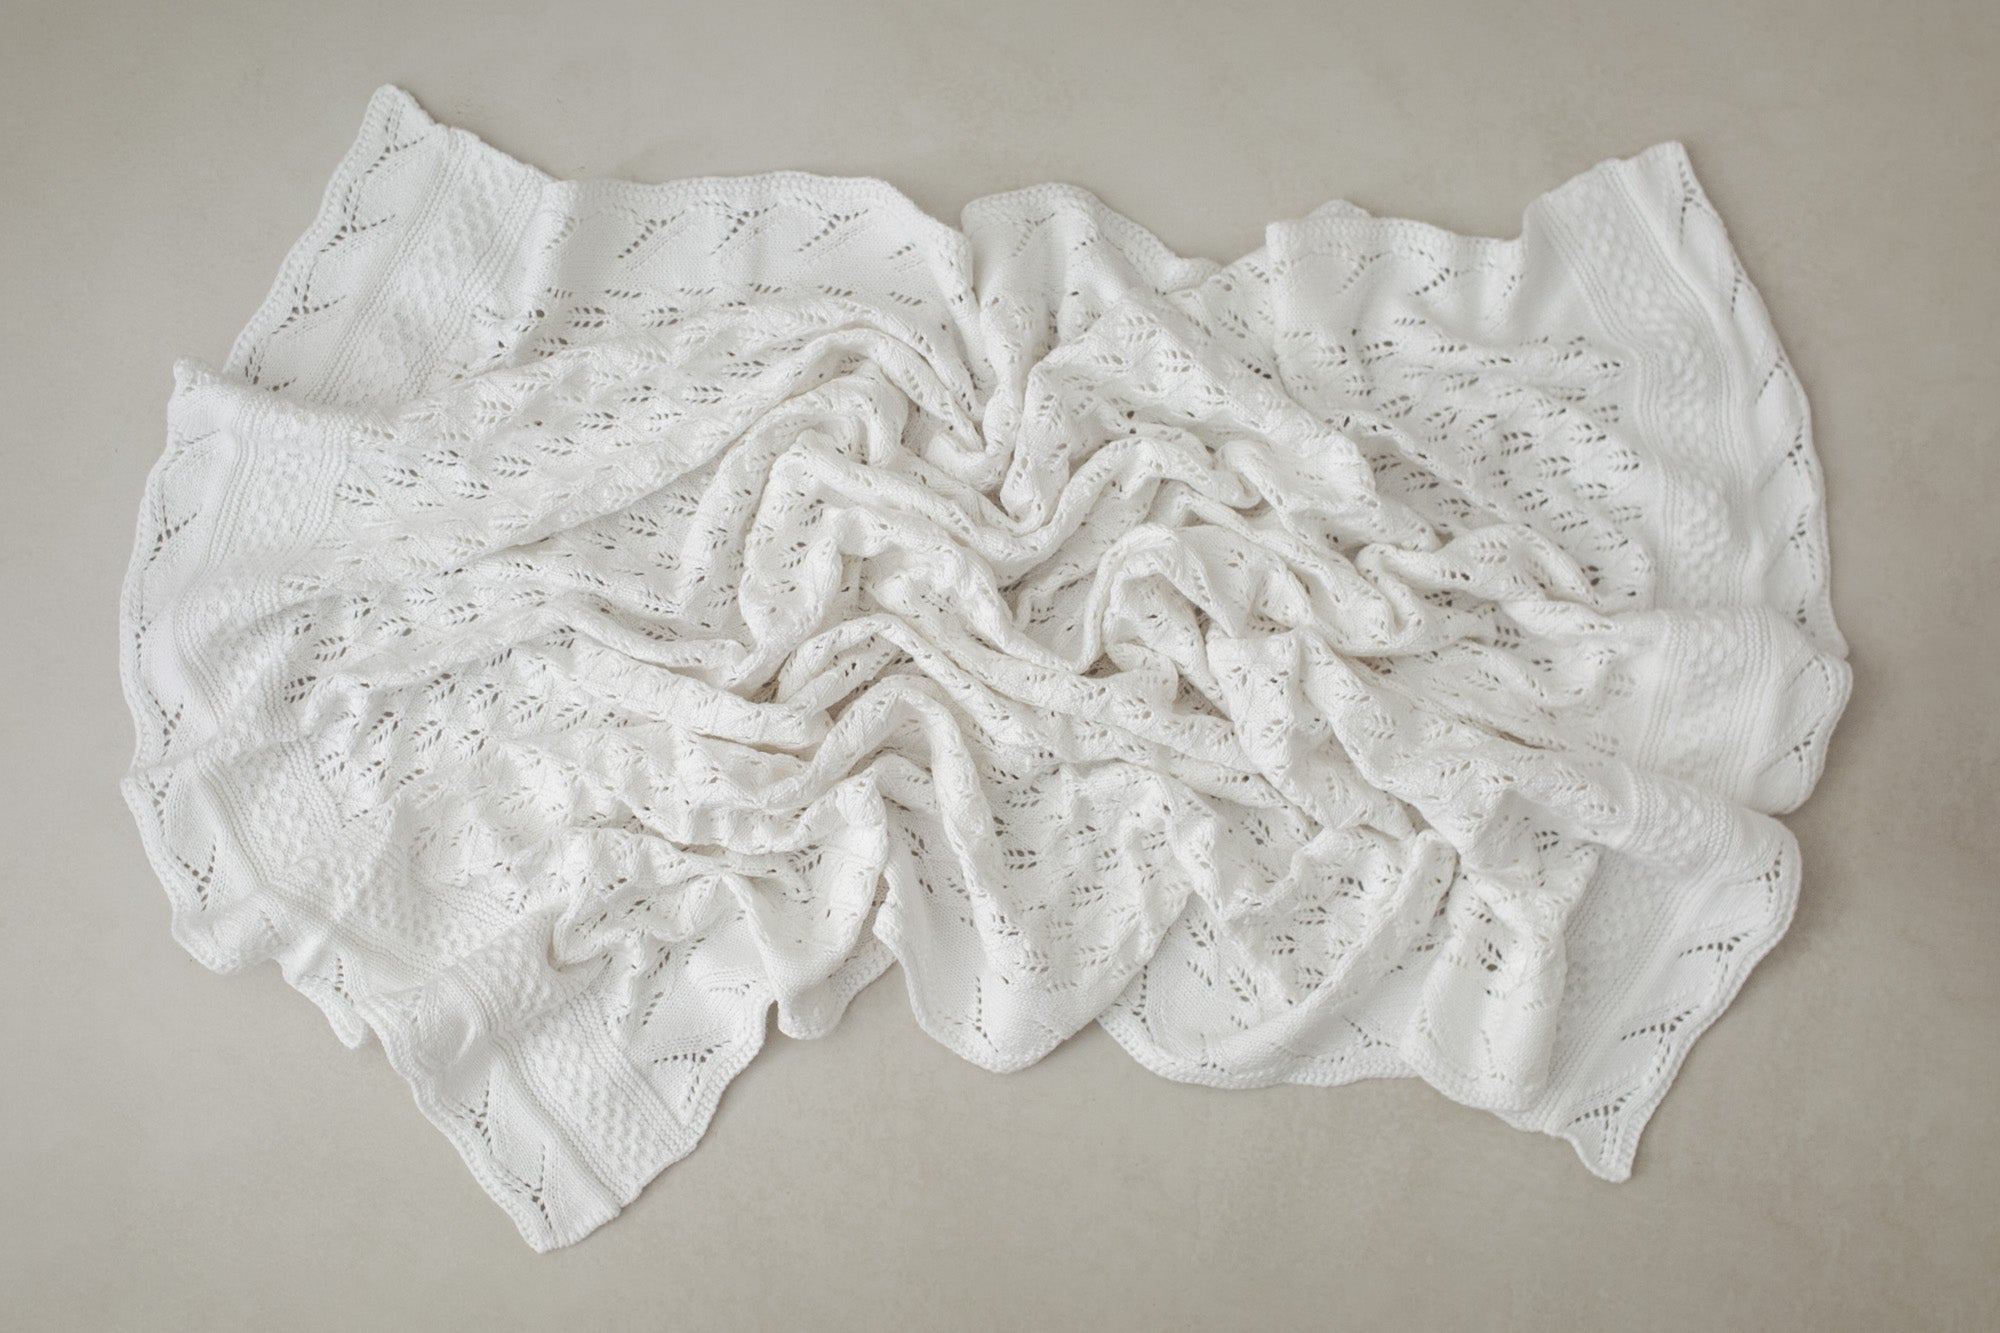 Estelle Knit Blankets